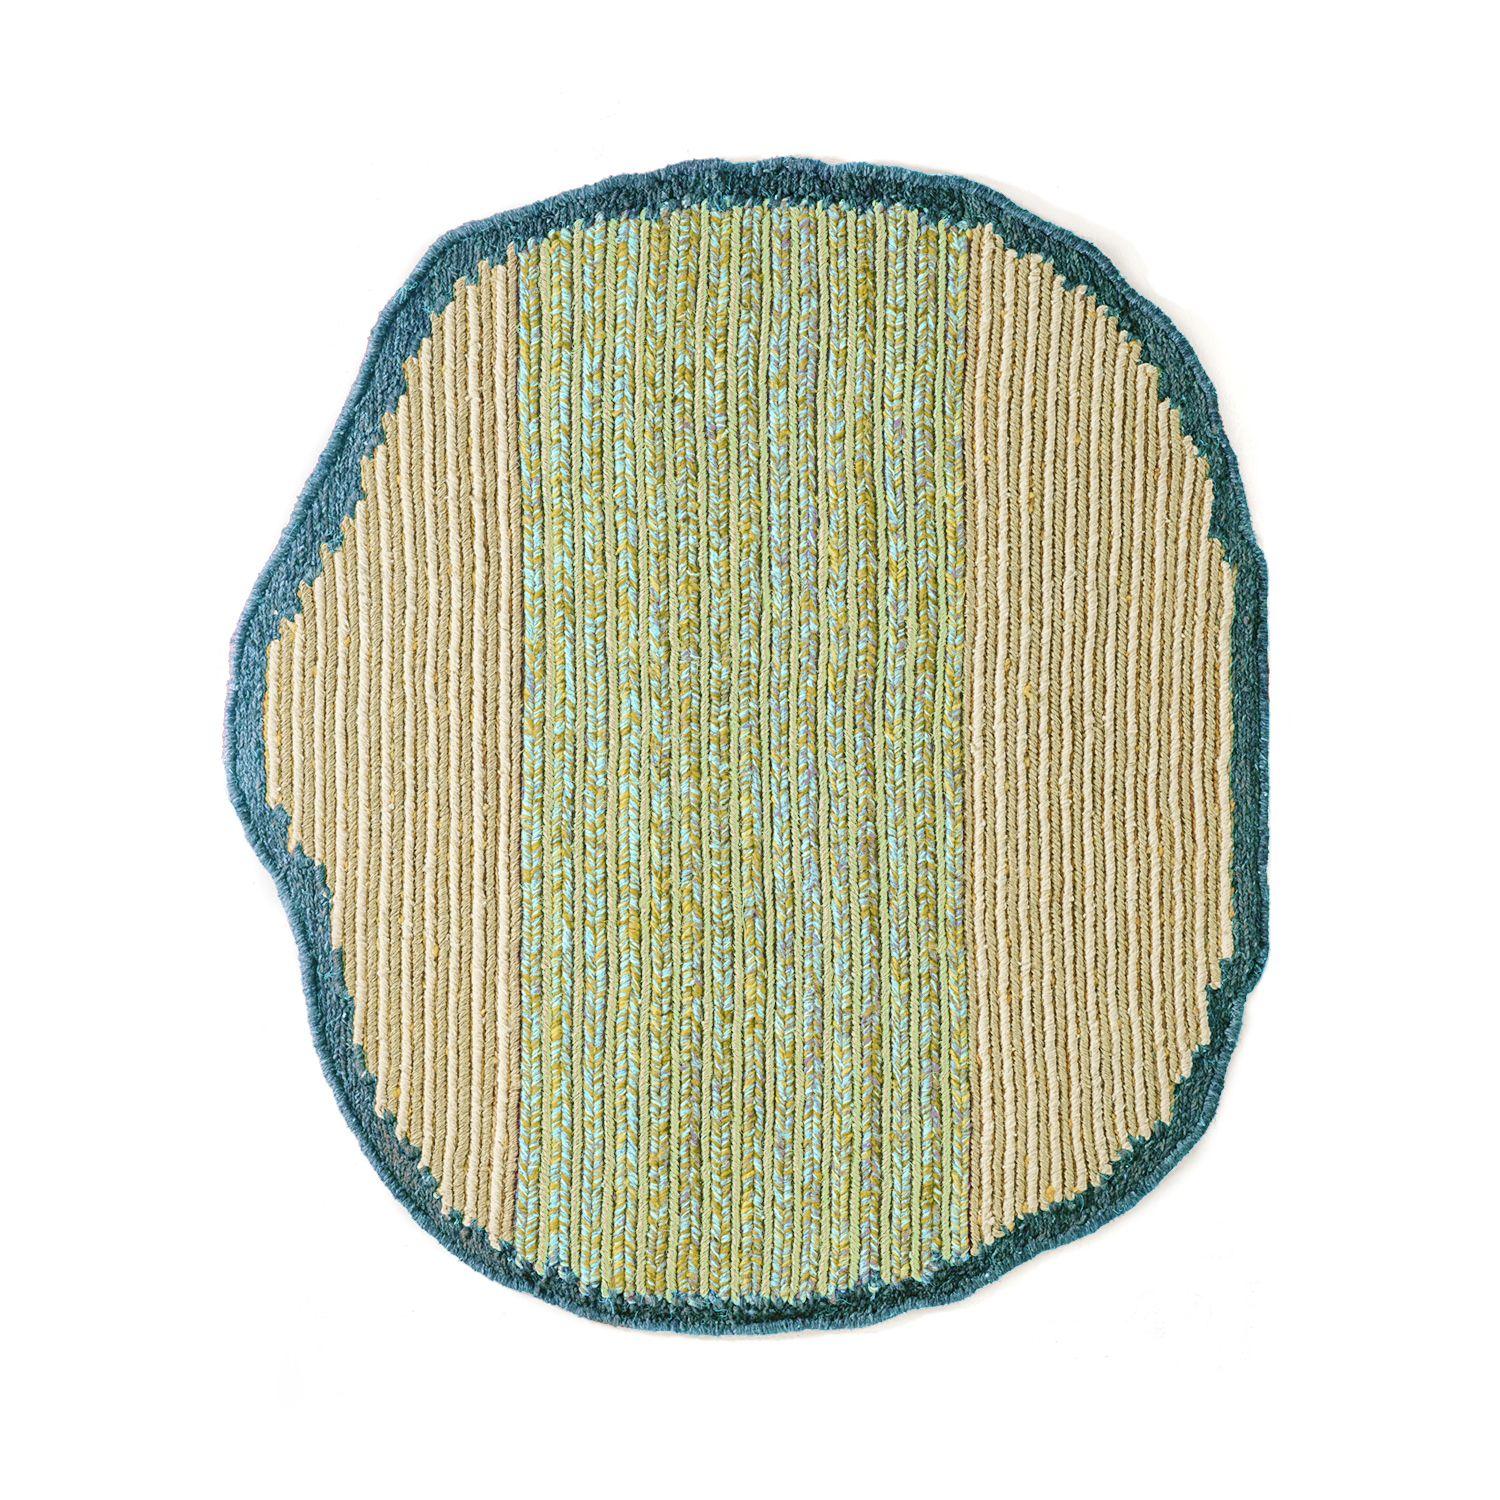 Kleiner Uilas-Teppich von Mae Engelgeer
MATERIALIEN: 100% Fique-Fasern aus Furcraea-Blättern. 
Technik: Natürliche Fasern. Handgewebt in Kolumbien.
Abmessungen: B 180 x L 200 cm 
Erhältlich in den Farben: terra/ sand/ viola, lavanda/ blue lila/